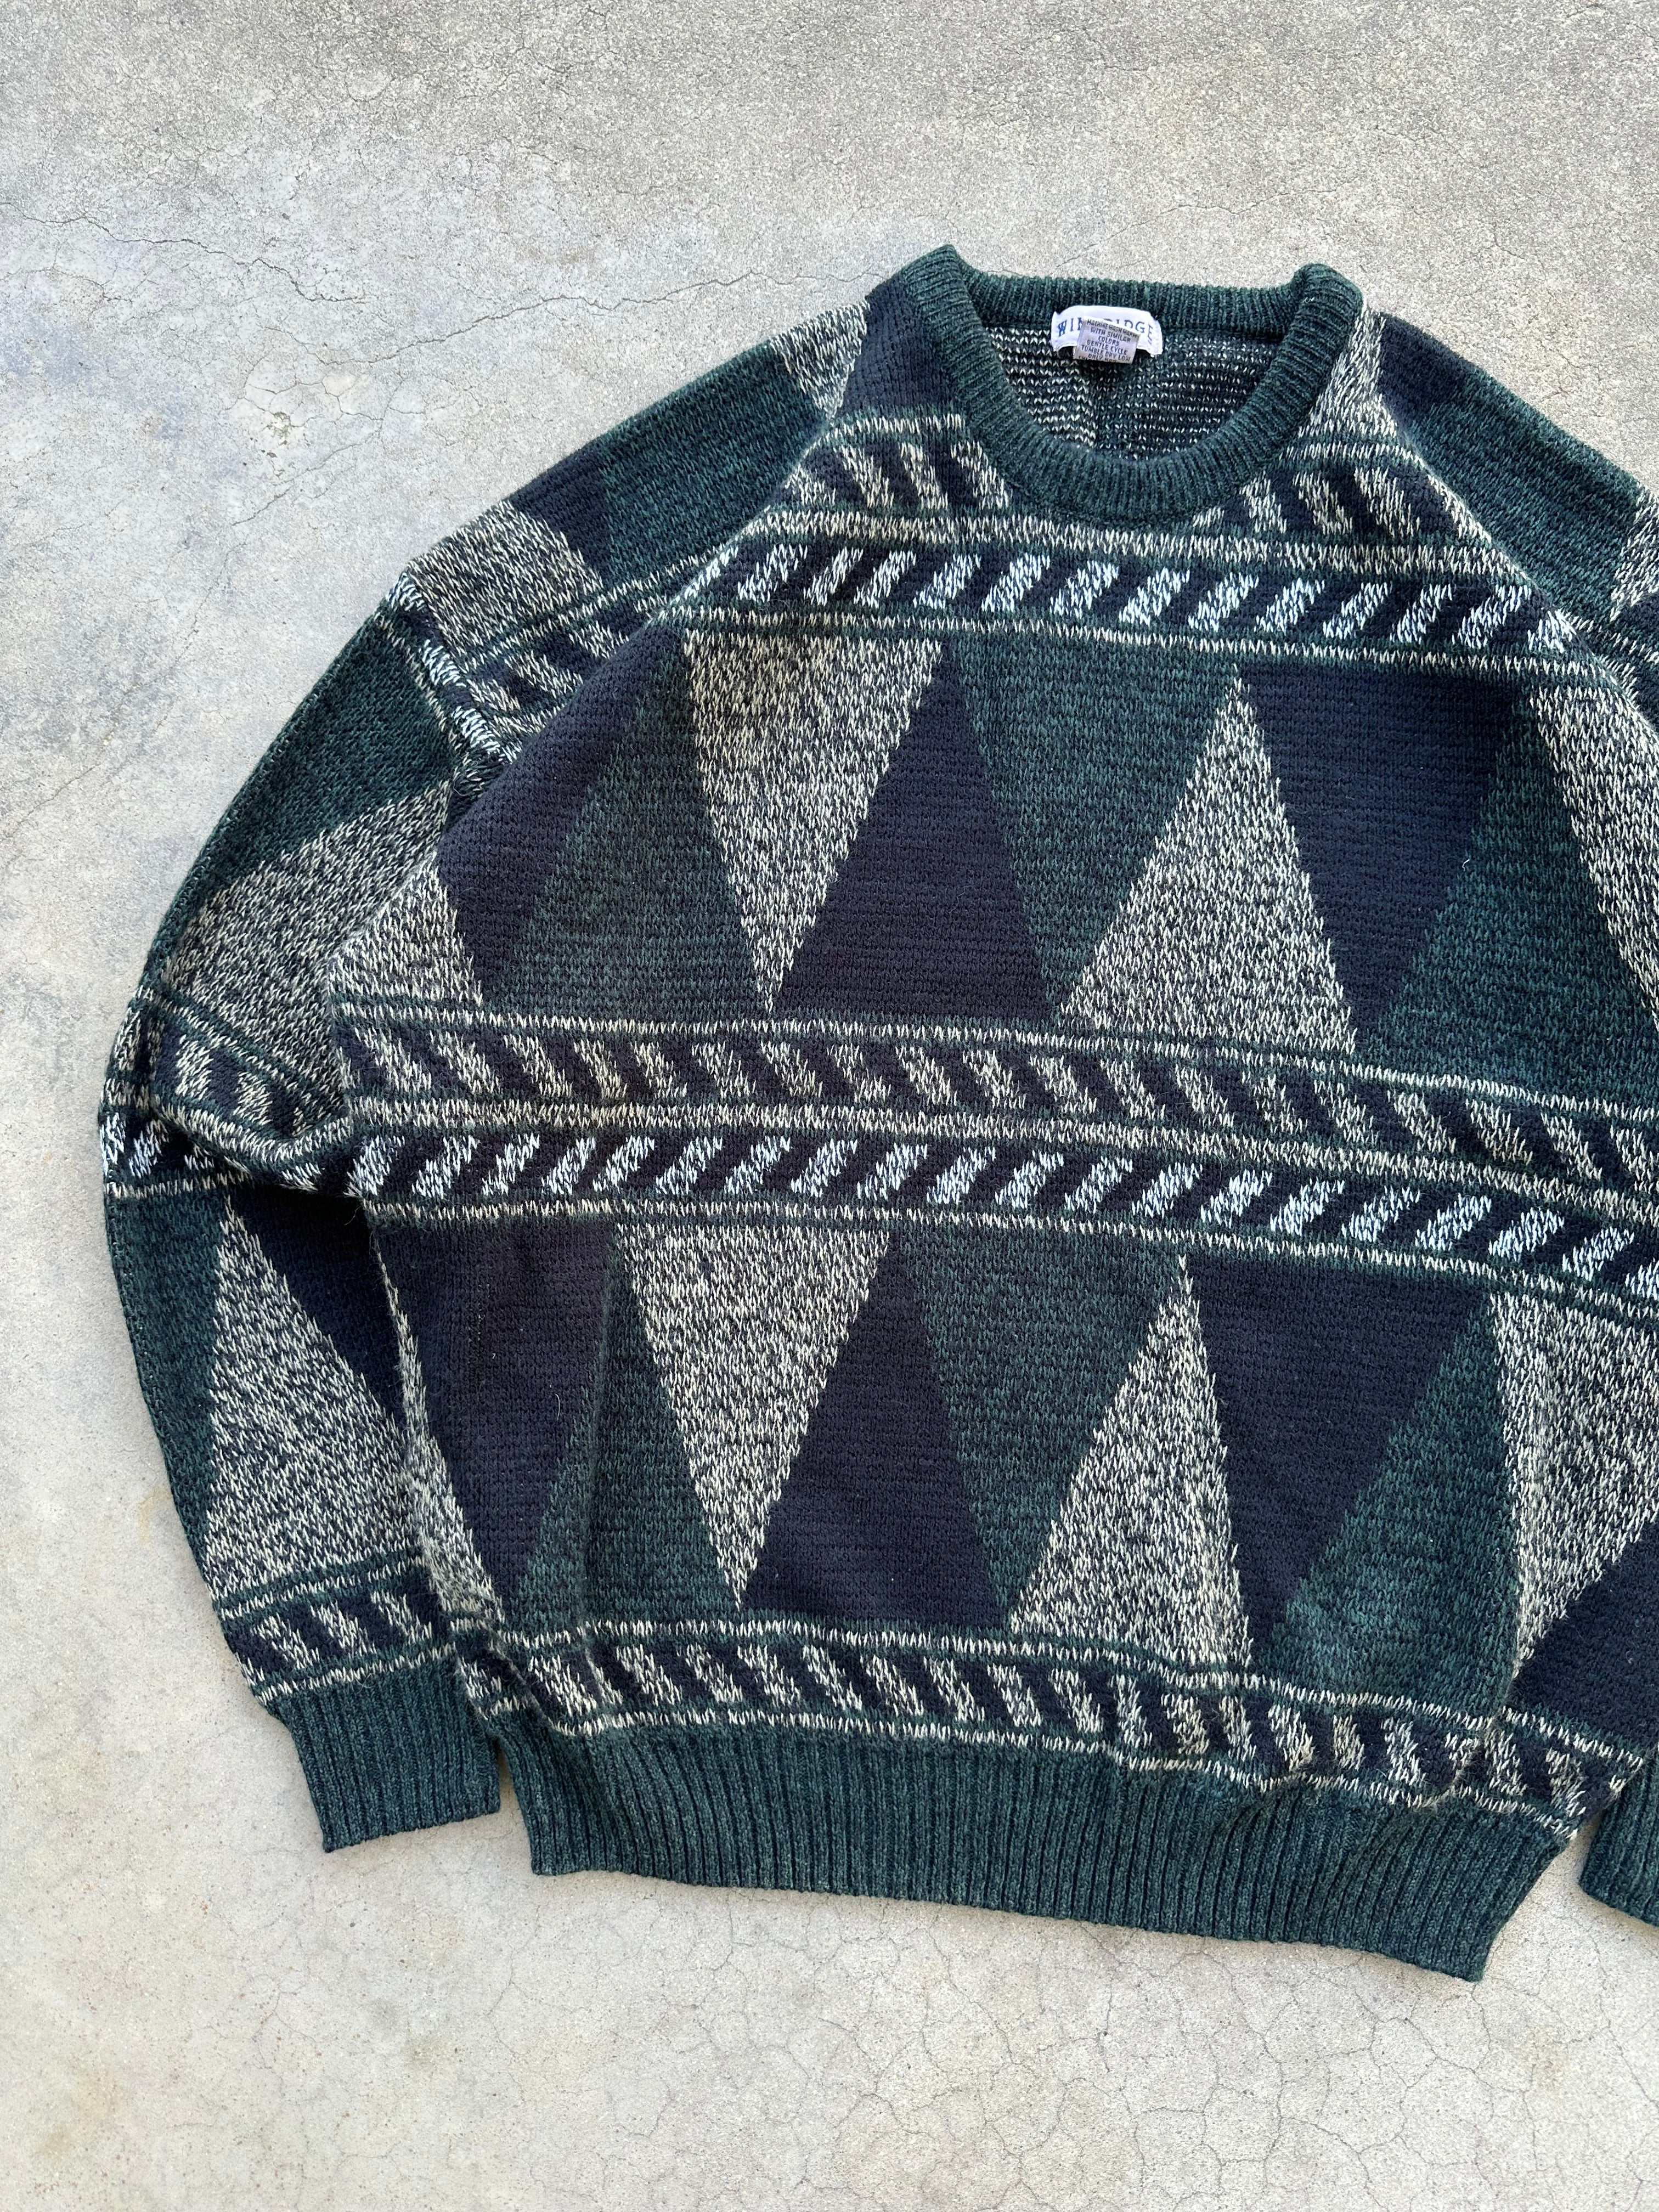 Vintage Windridge Cozy Sweater